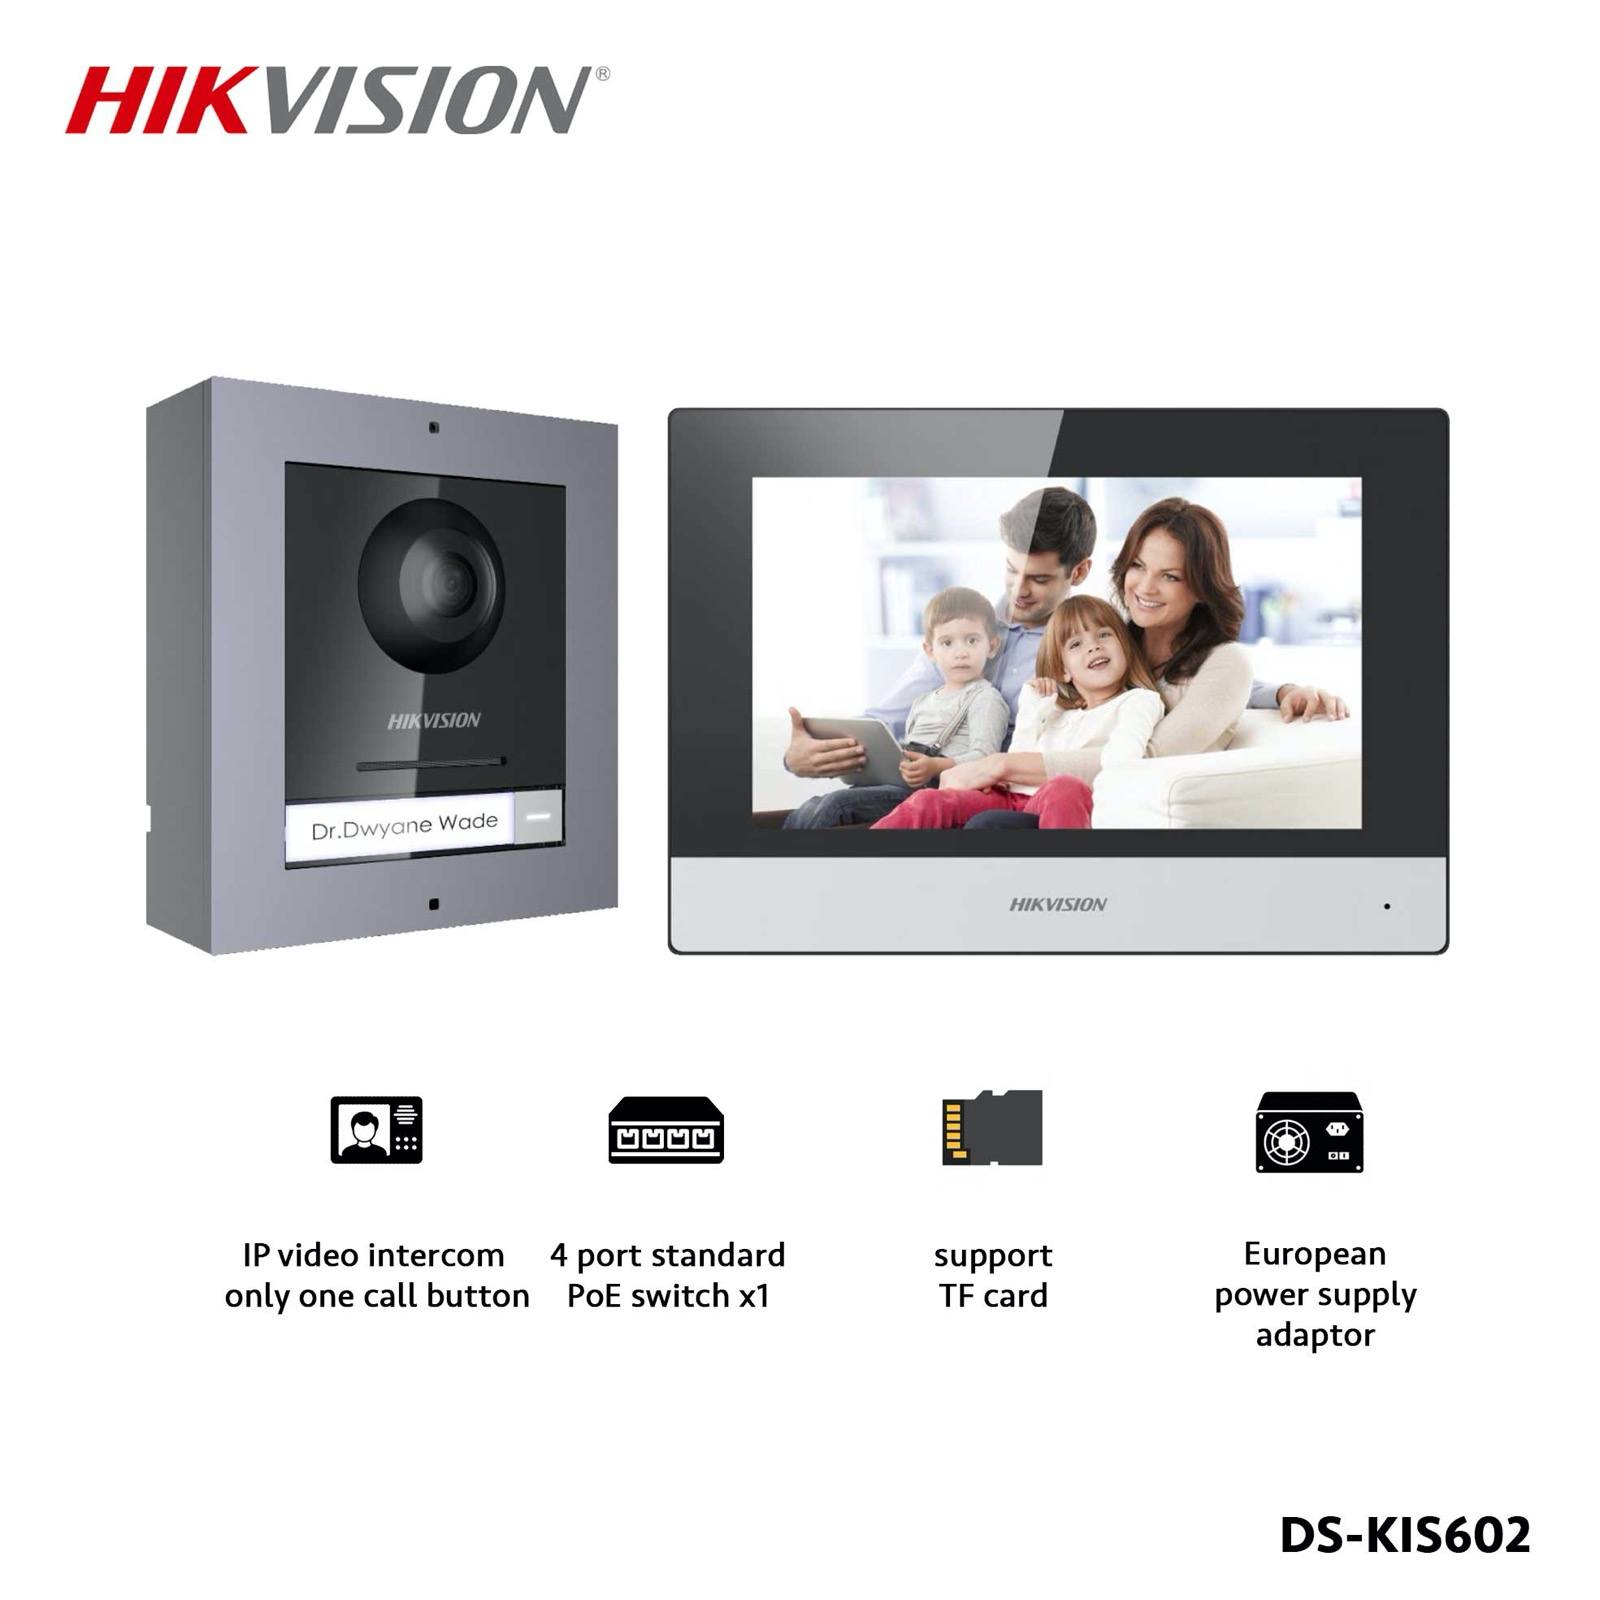 hikvision desktop client